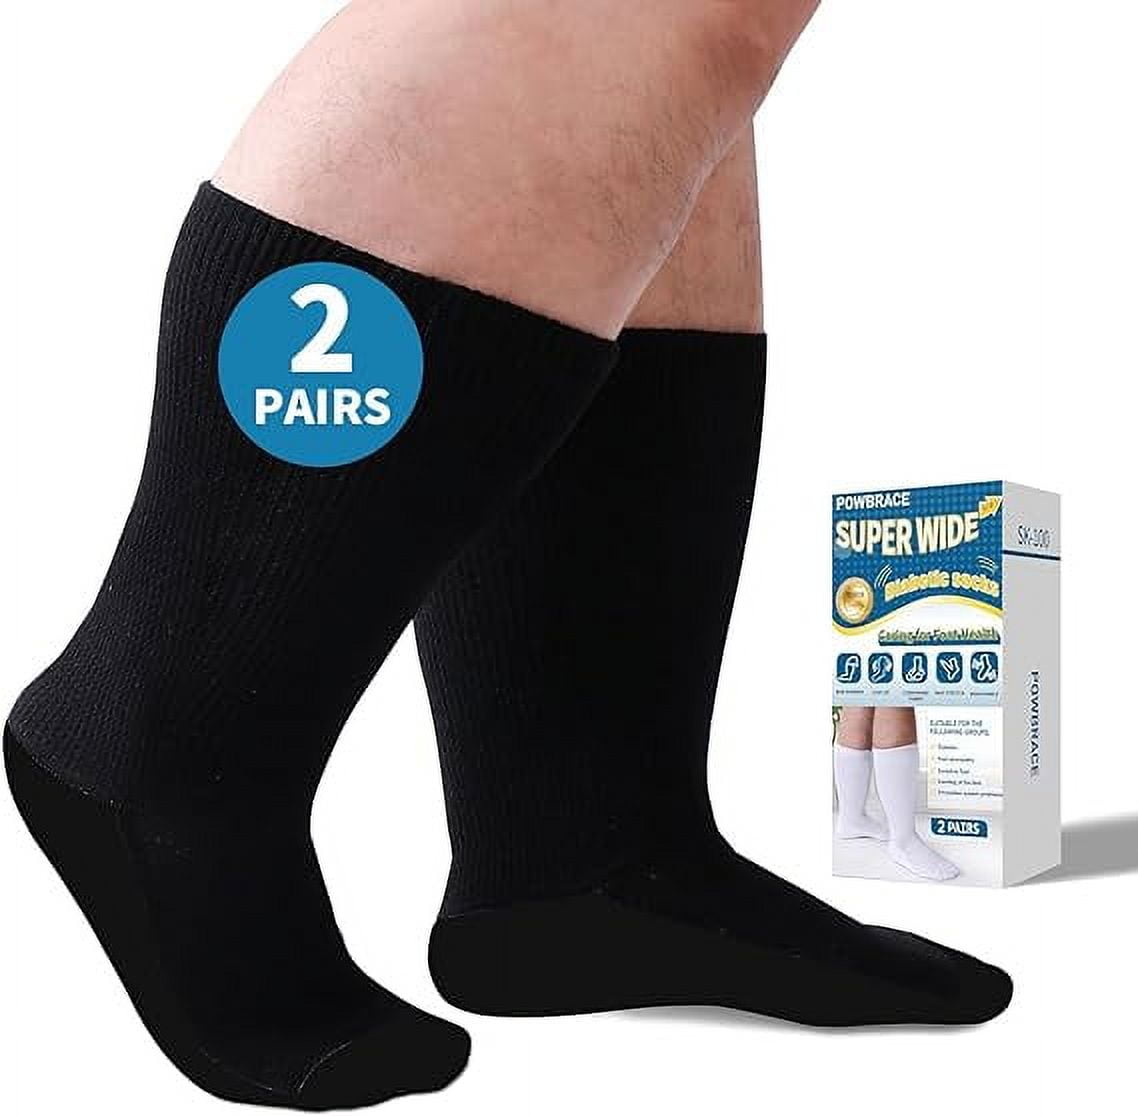 Powbrace 2 Pairs Super wide Diabetic socks for Men,Non Slip Socks ...